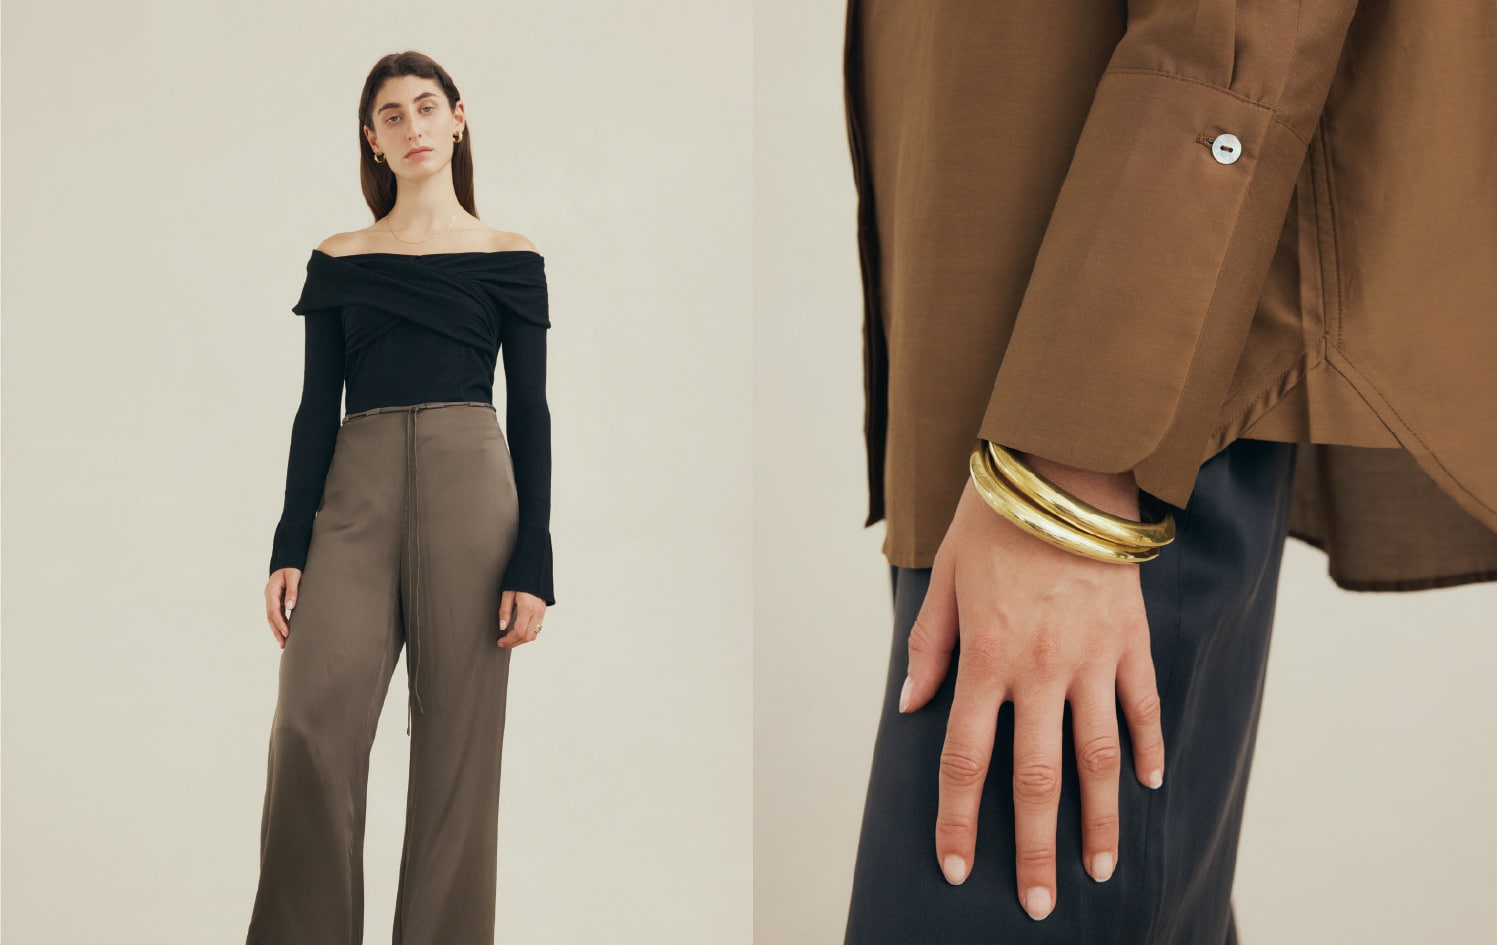 Décor meets dressing via in-vogue schemes with Resene The Range fashion colours paint